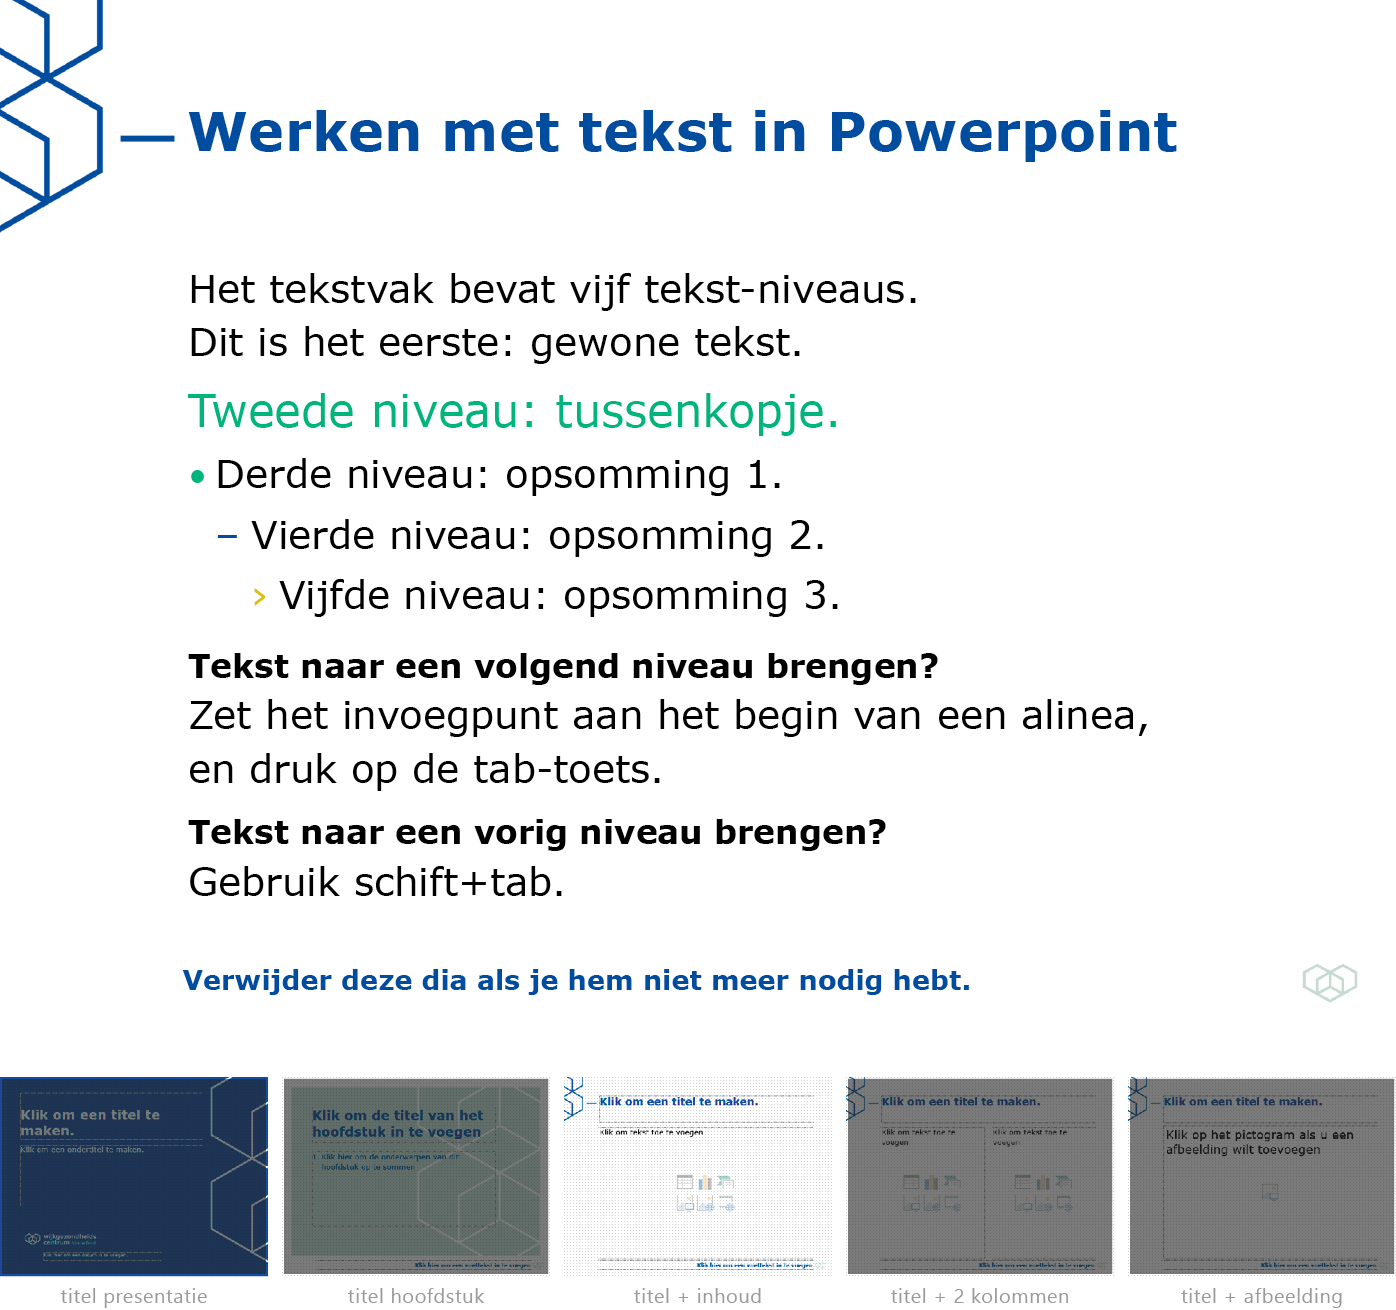 Instructie "werken met tekst in Powerpoint" uit het Powerpoint-sjabloon voor WGC Nieuw Gent.